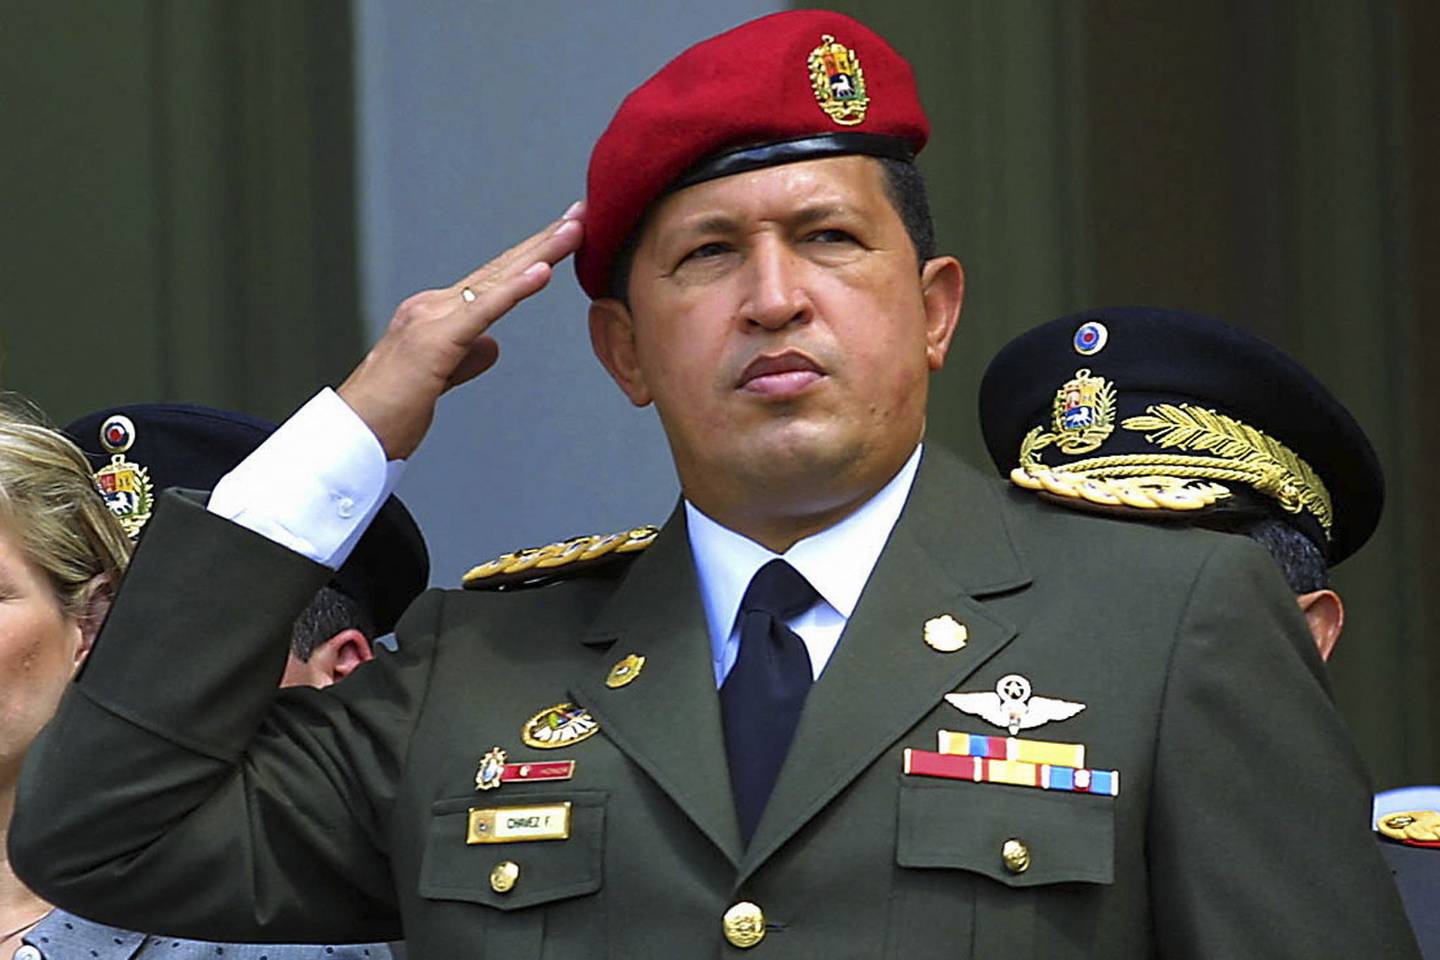 El presidente venezolano Hugo Chávez saluda durante una ceremonia en Caracas el 1° de febrero de 2001 en honor al 184 aniversario del nacimiento del líder campesino revolucionario Ezequiel Zamora.